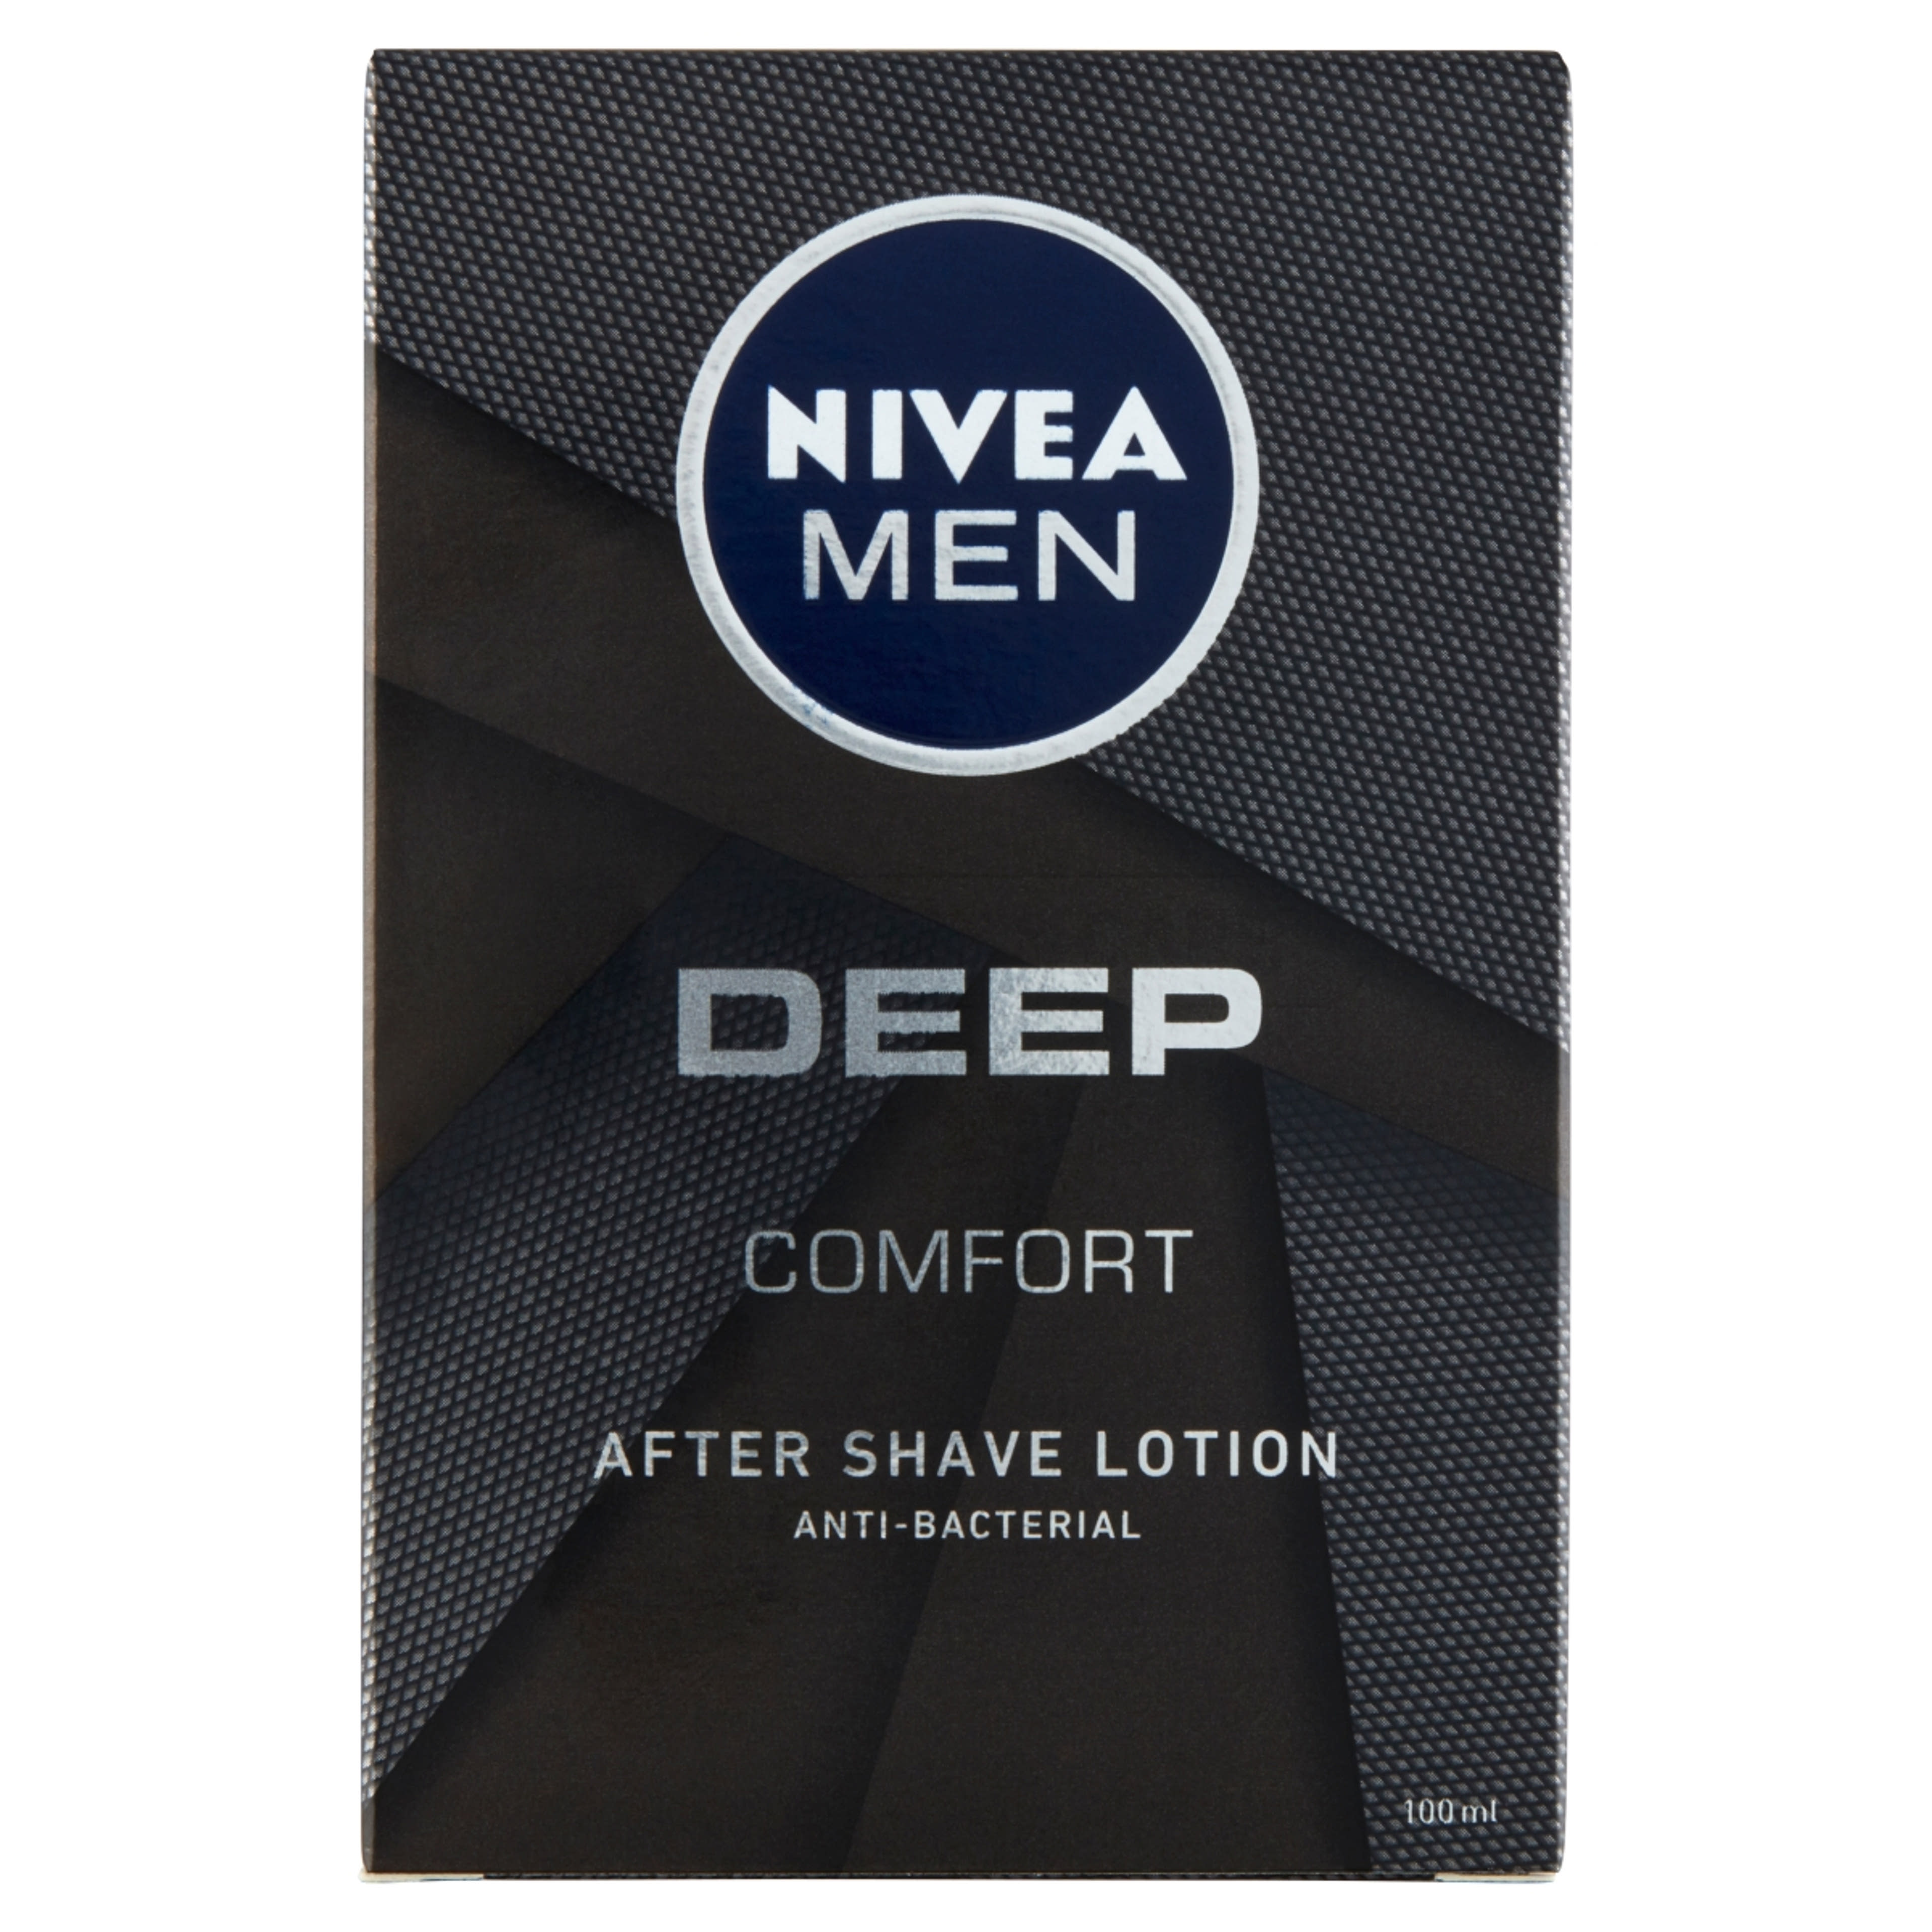 Nivea men after shave lotion men deep - 100 ml